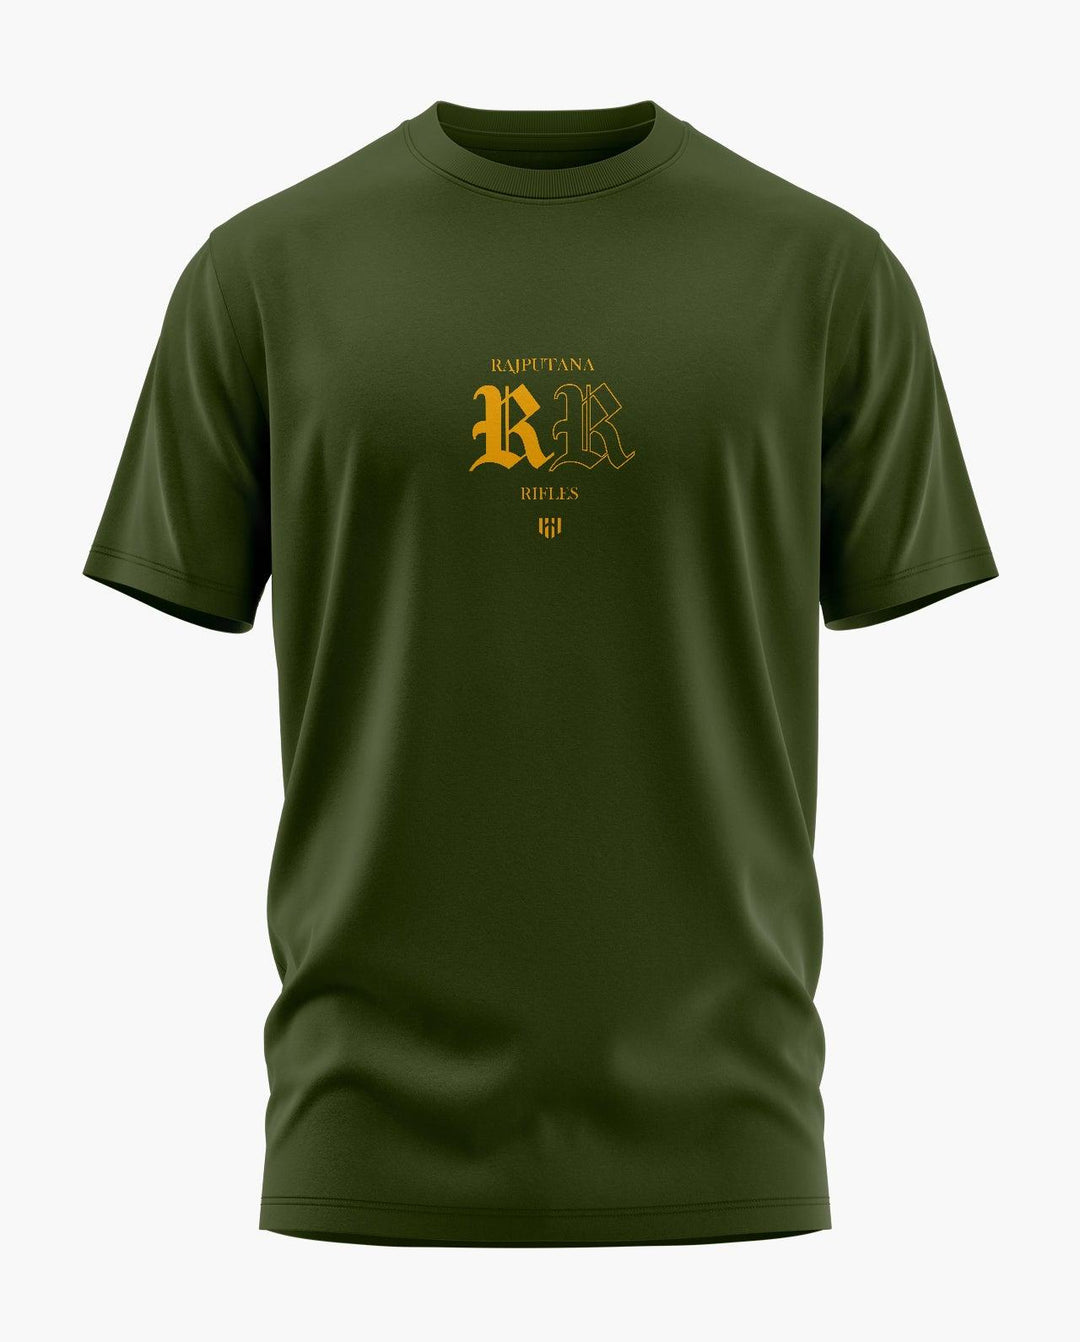 Rajputana Rifles Aero Armour T-Shirt - Aero Armour